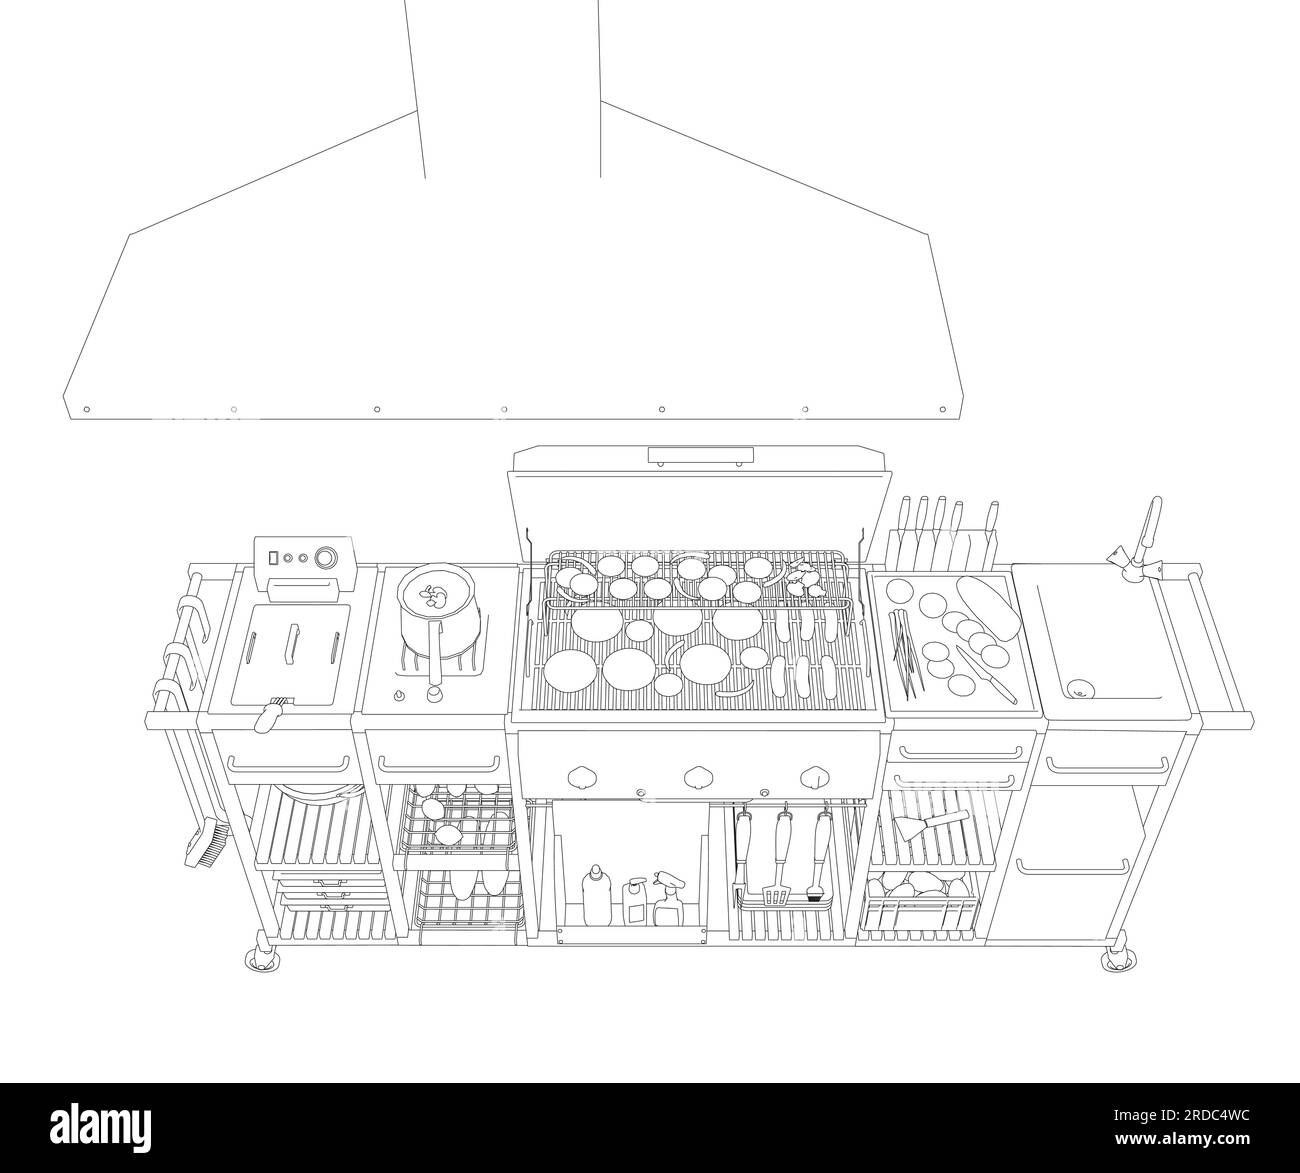 Barbecue/BBQ Gas Grill Clipart - Outline. Vektorgrafik zum Kochen von Speisen auf einem Holzkohlegrill. Stock Vektor